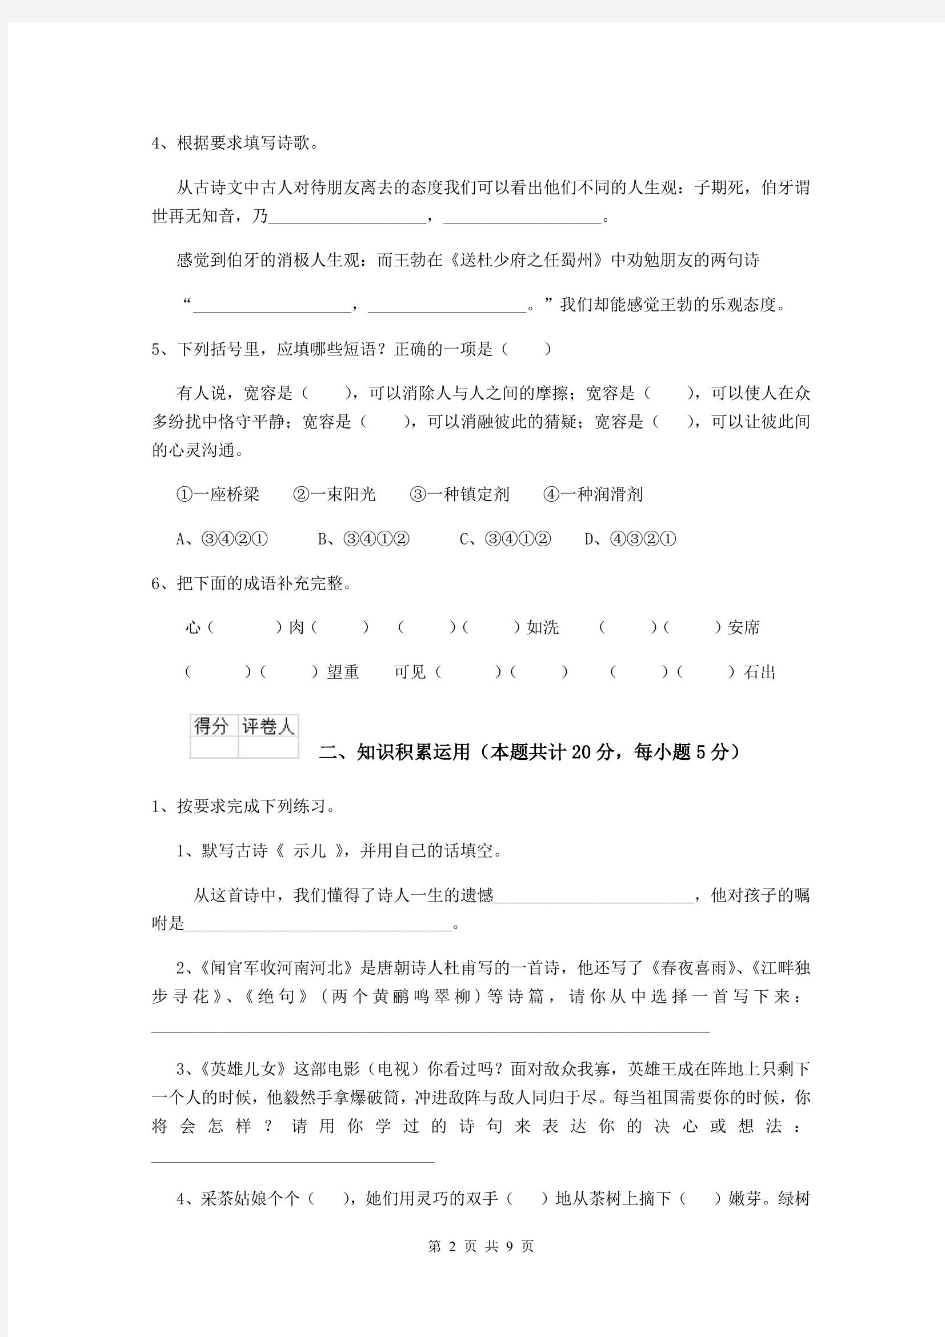 2019-2020年小升初语文毕业考试试题人教版C卷 (含答案).